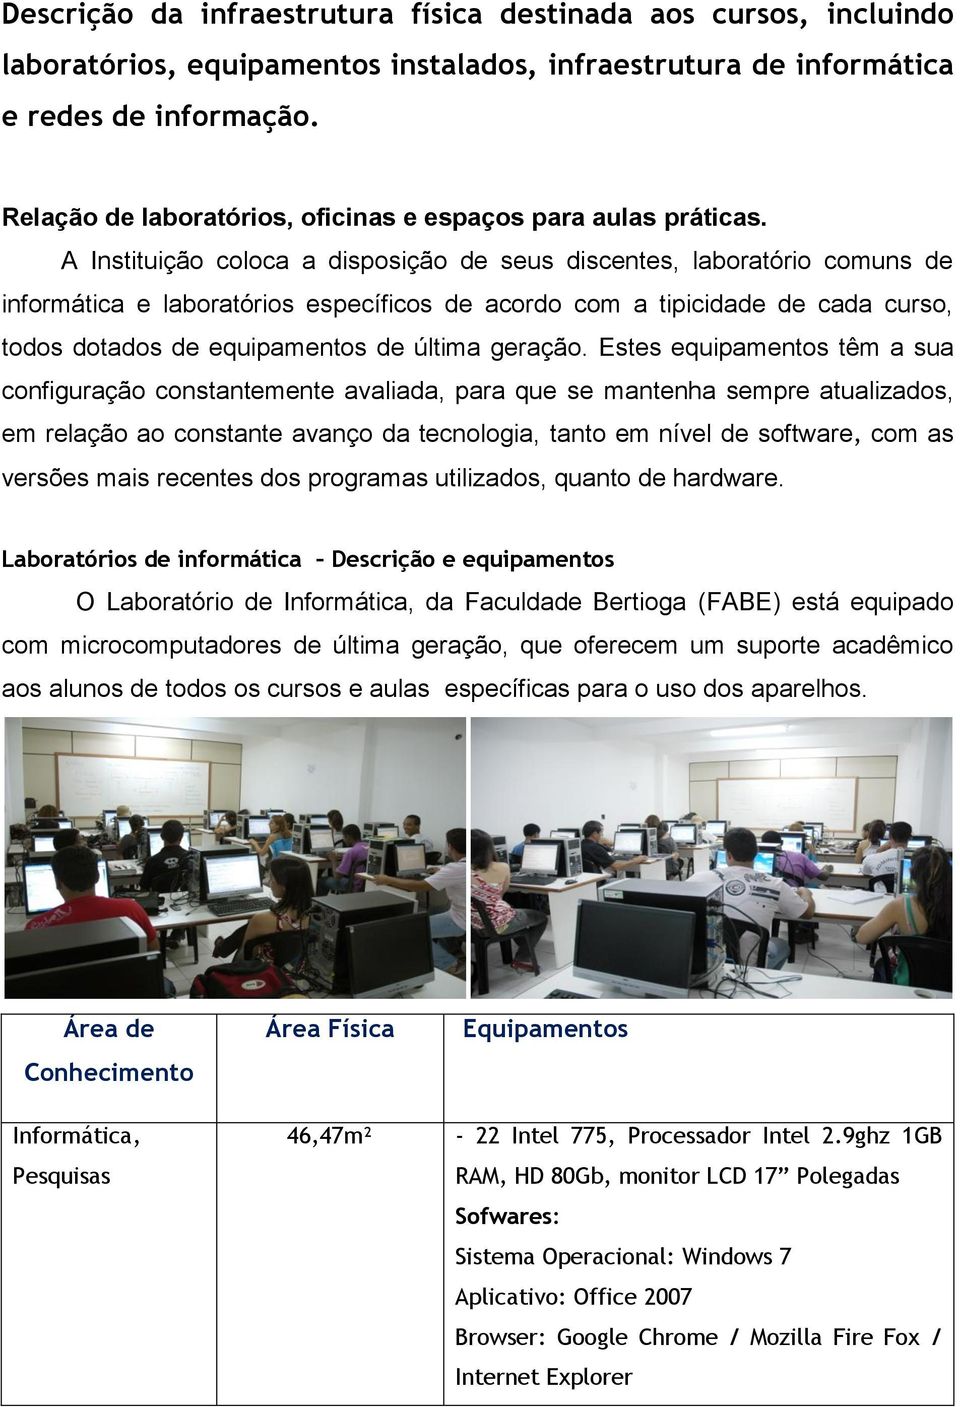 A Instituição coloca a disposição de seus discentes, laboratório comuns de informática e laboratórios específicos de acordo com a tipicidade de cada curso, todos dotados de equipamentos de última